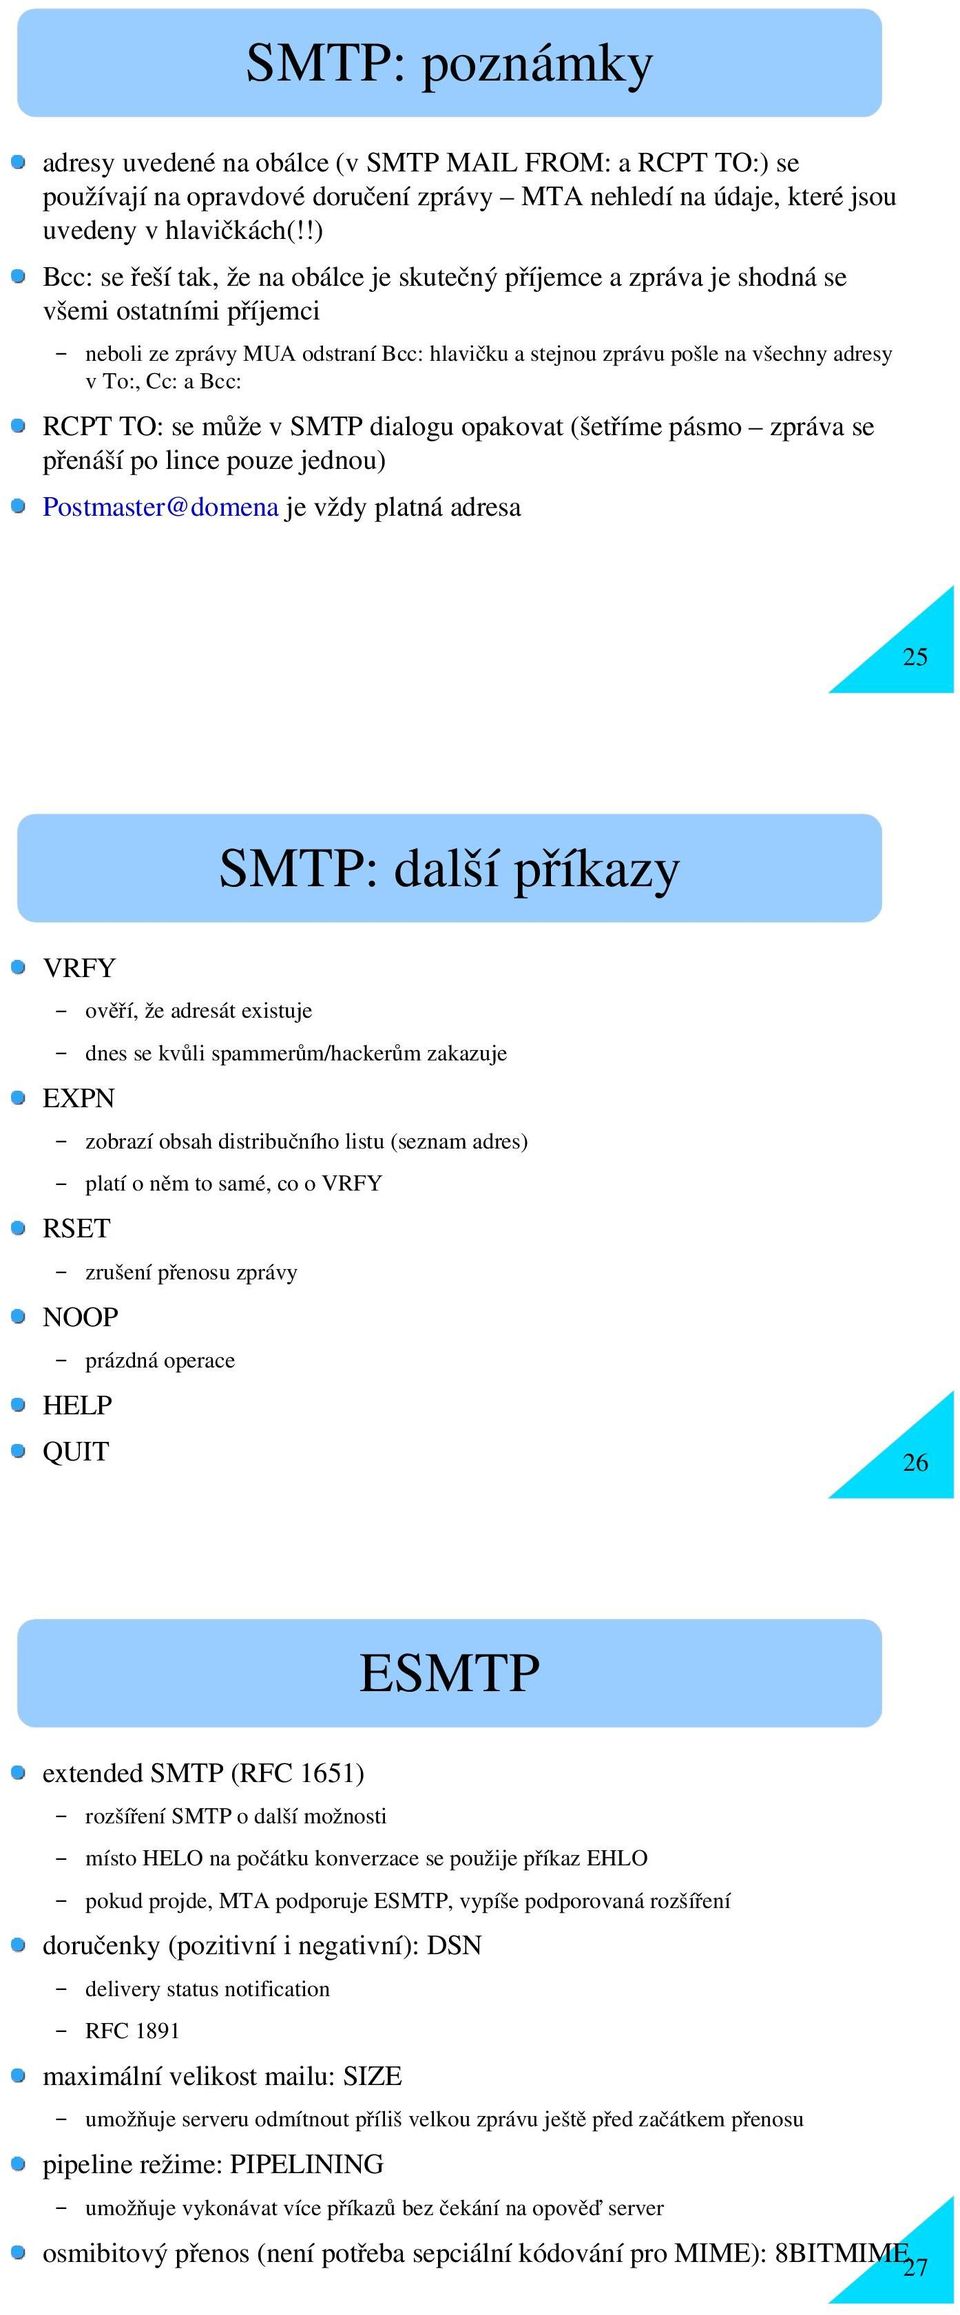 Bcc: RCPT TO: se může v SMTP dialogu opakovat (šetříme pásmo zpráva se přenáší po lince pouze jednou) Postmaster@domena je vždy platná adresa 25 ov HELP QUIT ěř SMTP: další příkazy í, že adresát